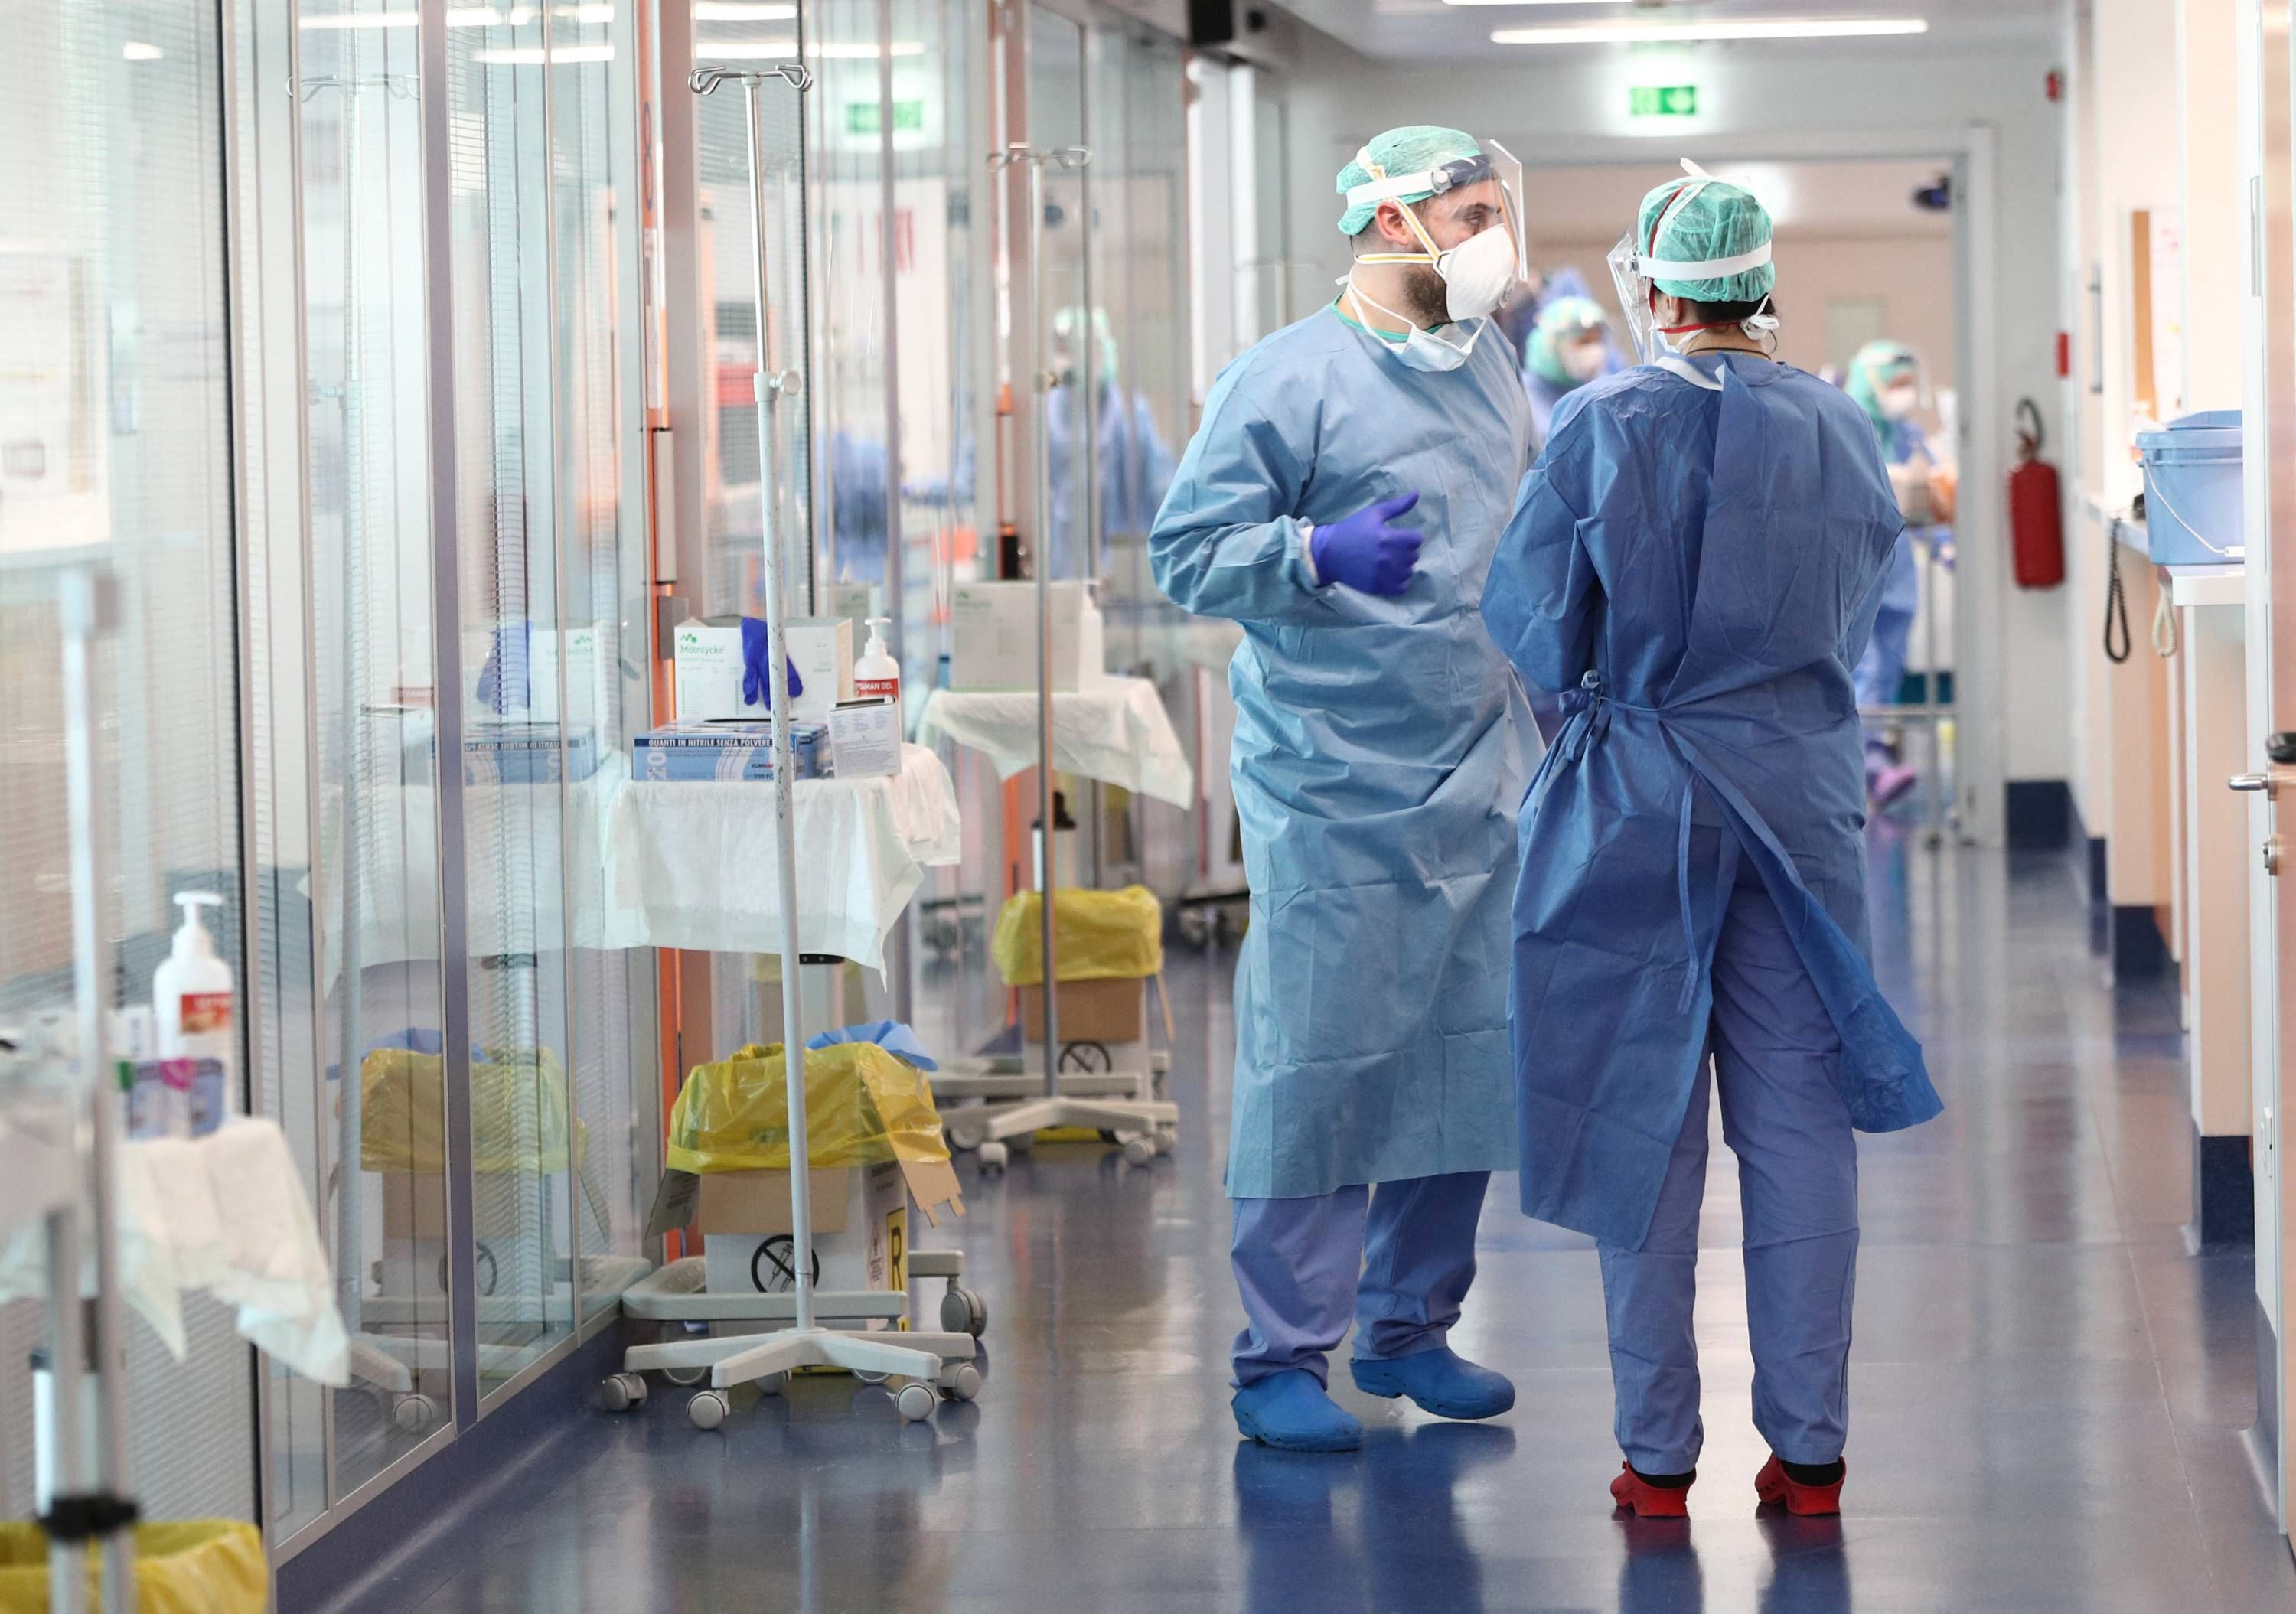 O veste bună: Spitalul Judeţean Sibiu poate trata pacienţi cu COVID-19 folosind plasmă de la donatori vindecaţi